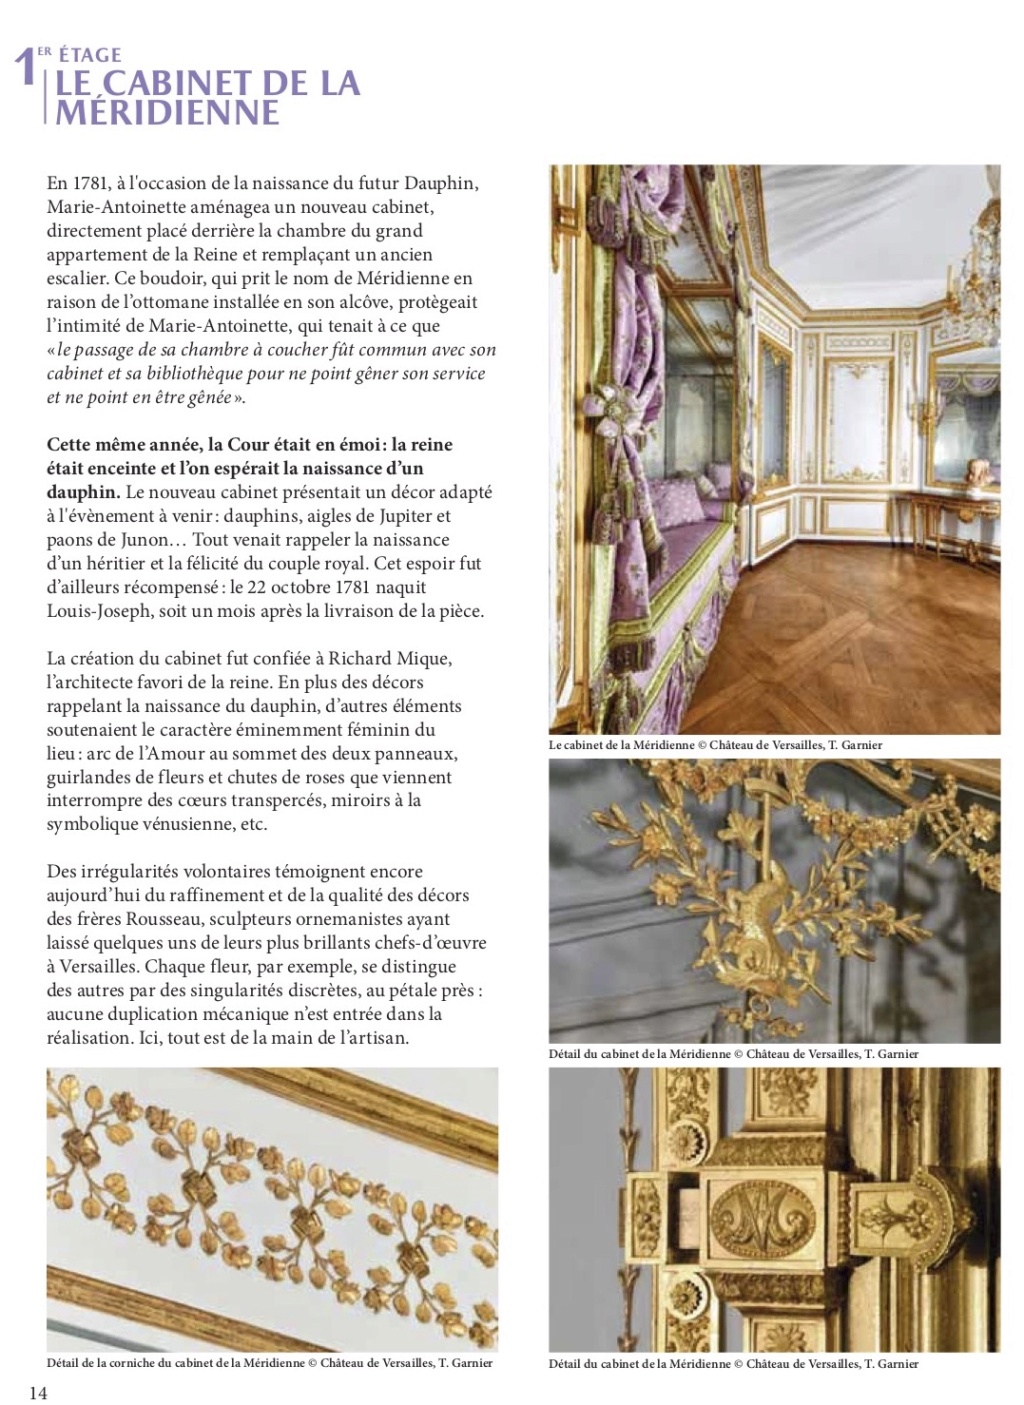 Les cabinets intérieurs de Marie-Antoinette au château de Versailles - Page 3 Dp_cab16